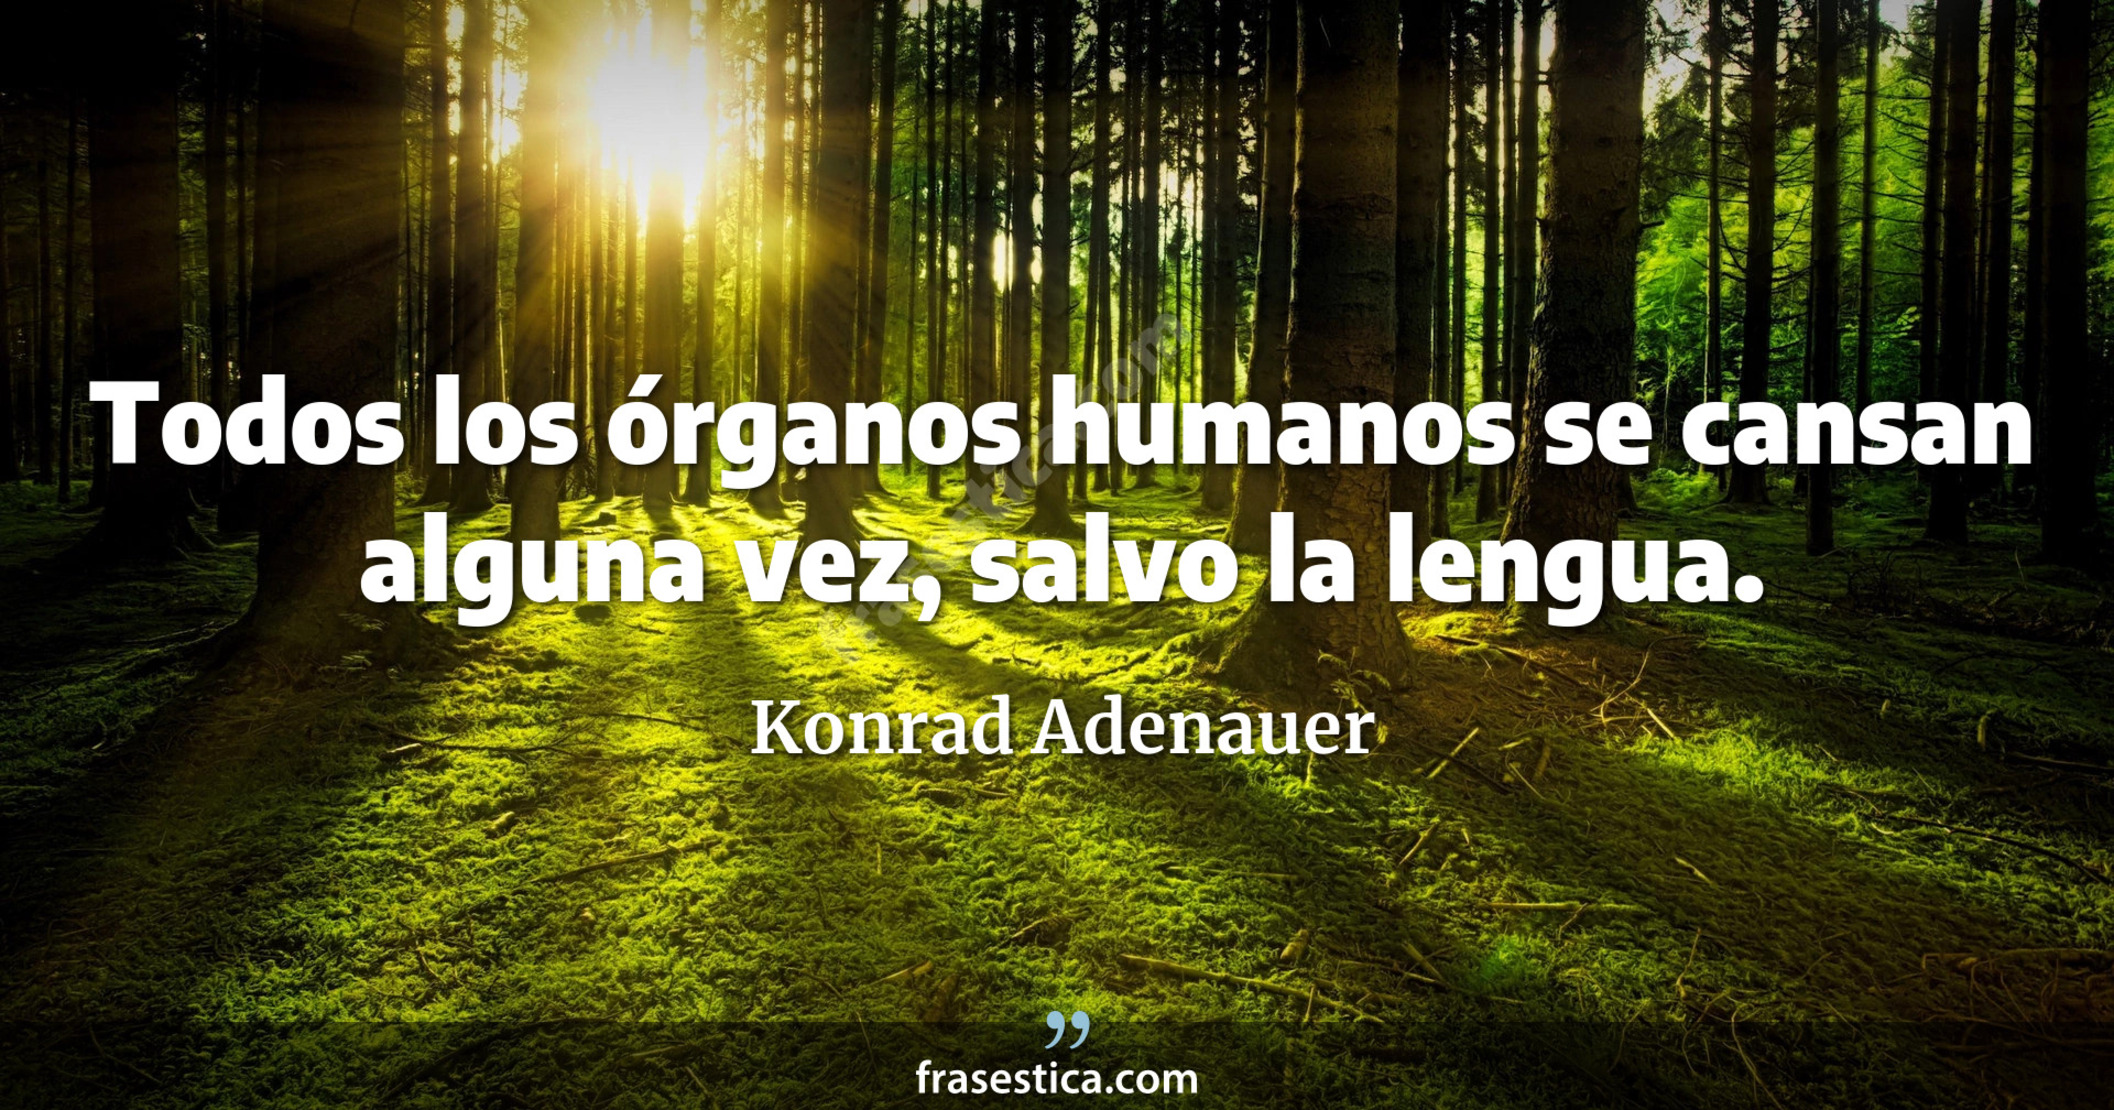 Todos los órganos humanos se cansan alguna vez, salvo la lengua. - Konrad Adenauer